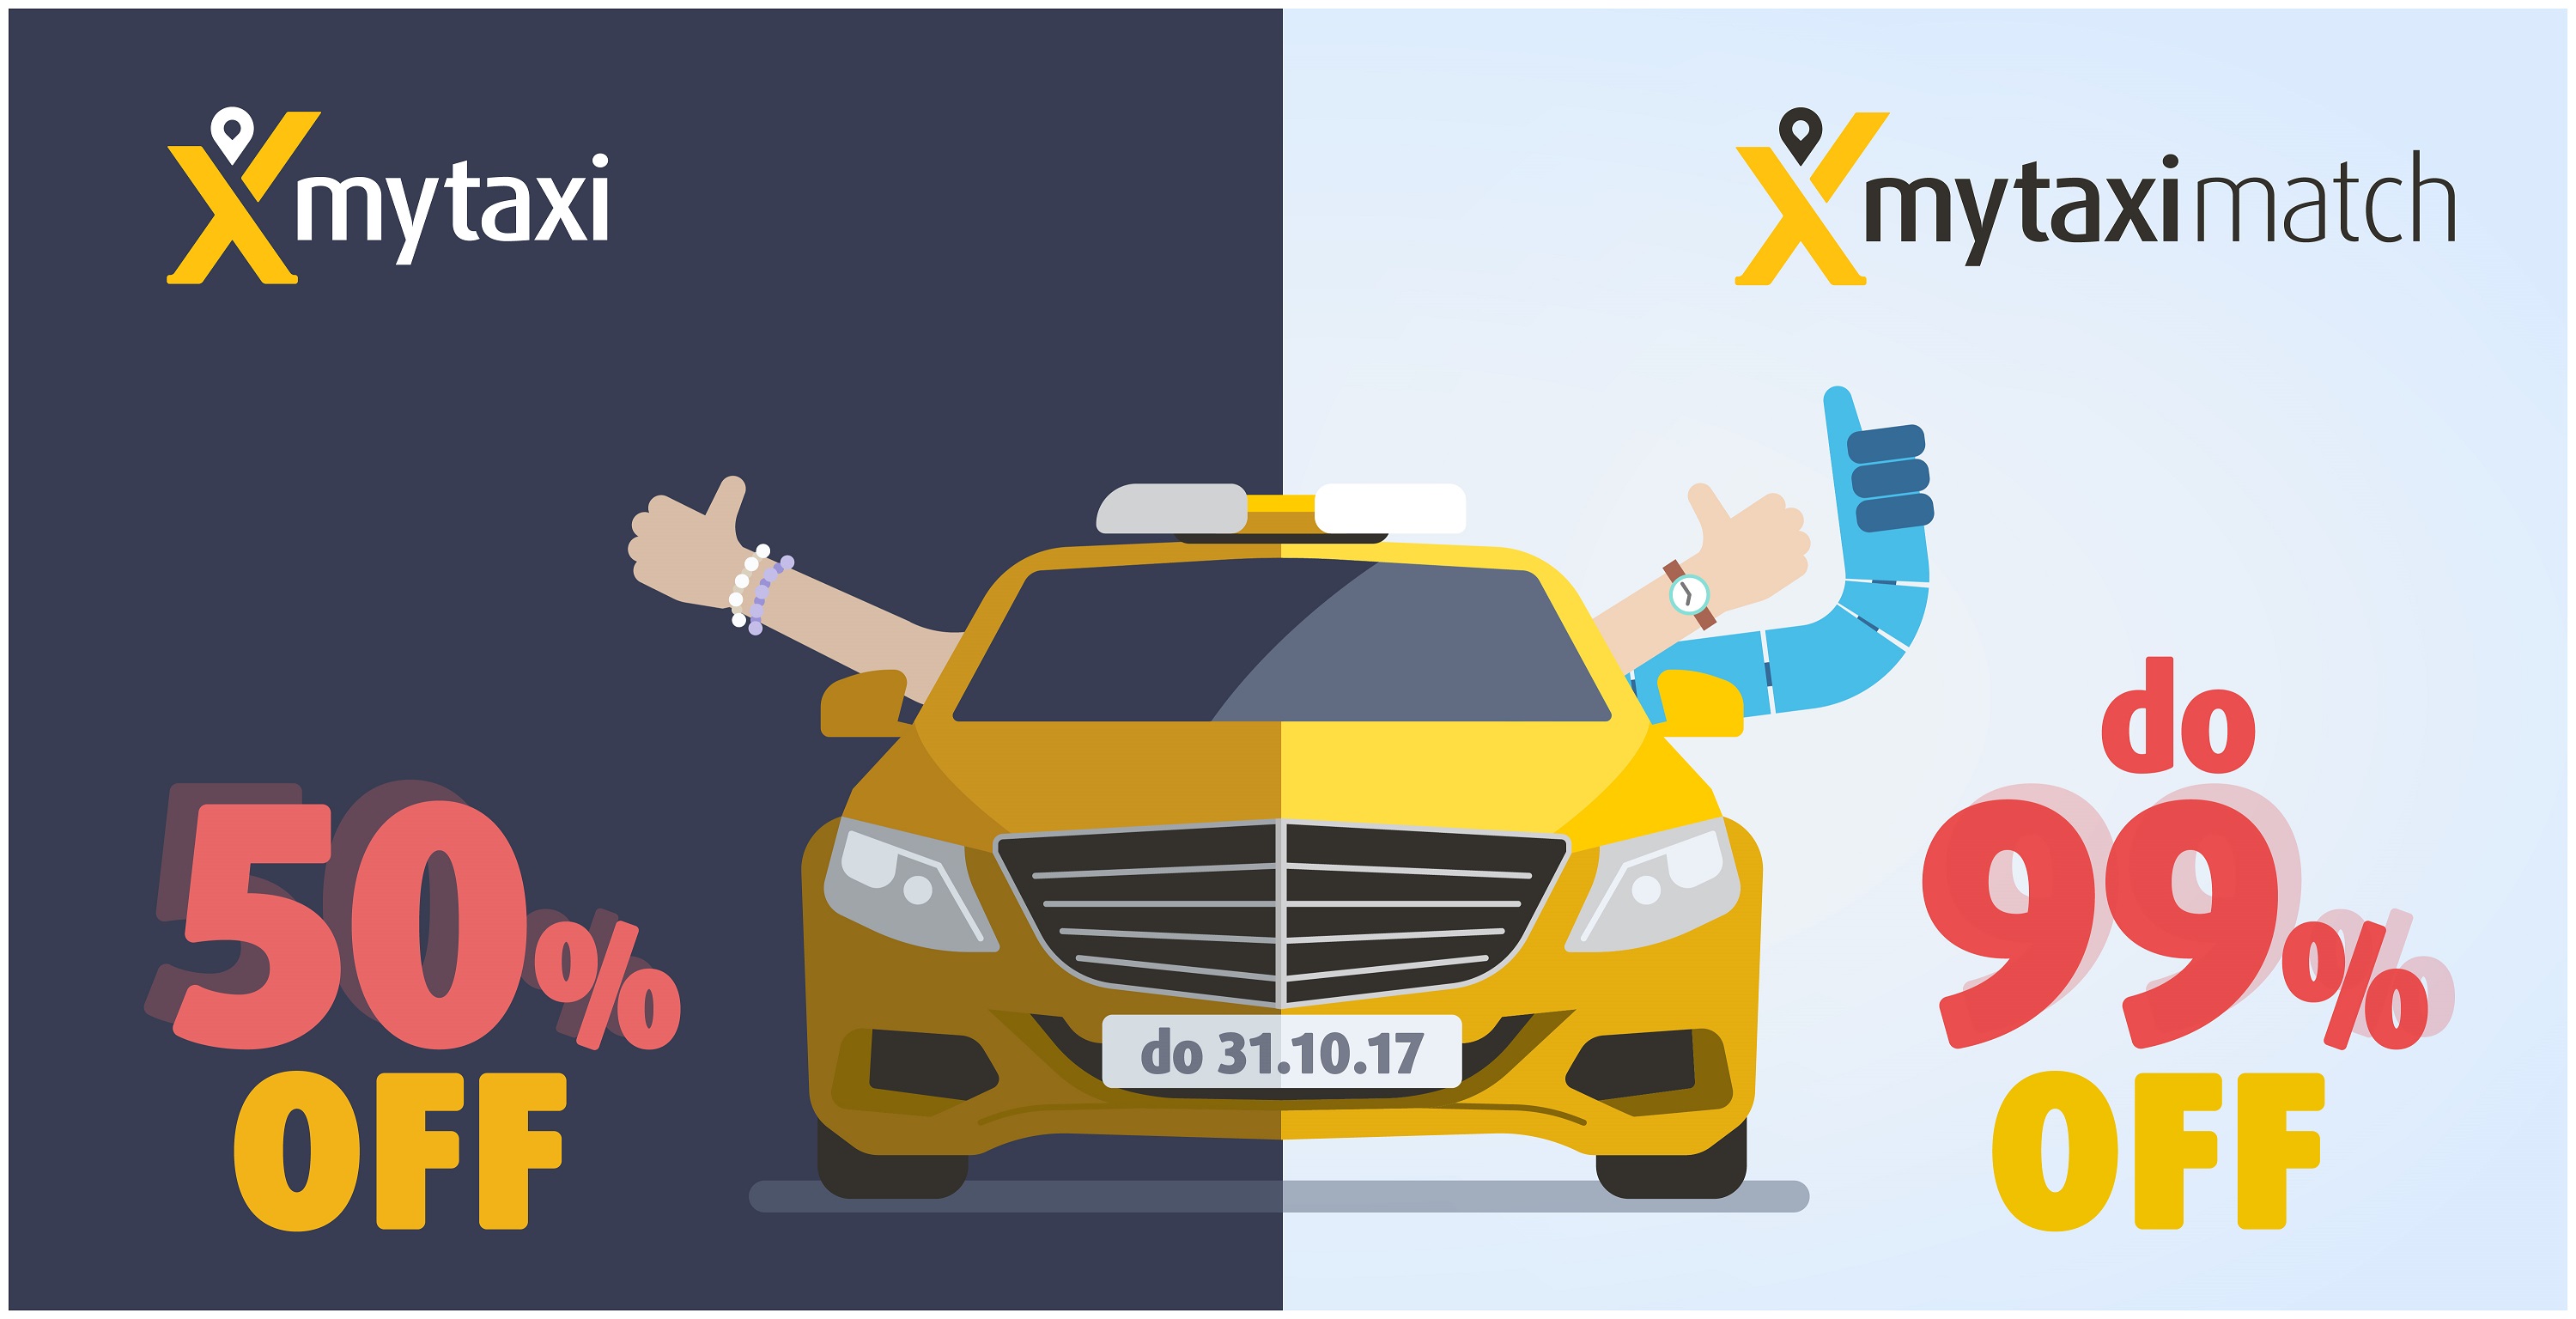 Promocja: kursy taksówkami nawet… 99% taniej (promocja mytaxi)